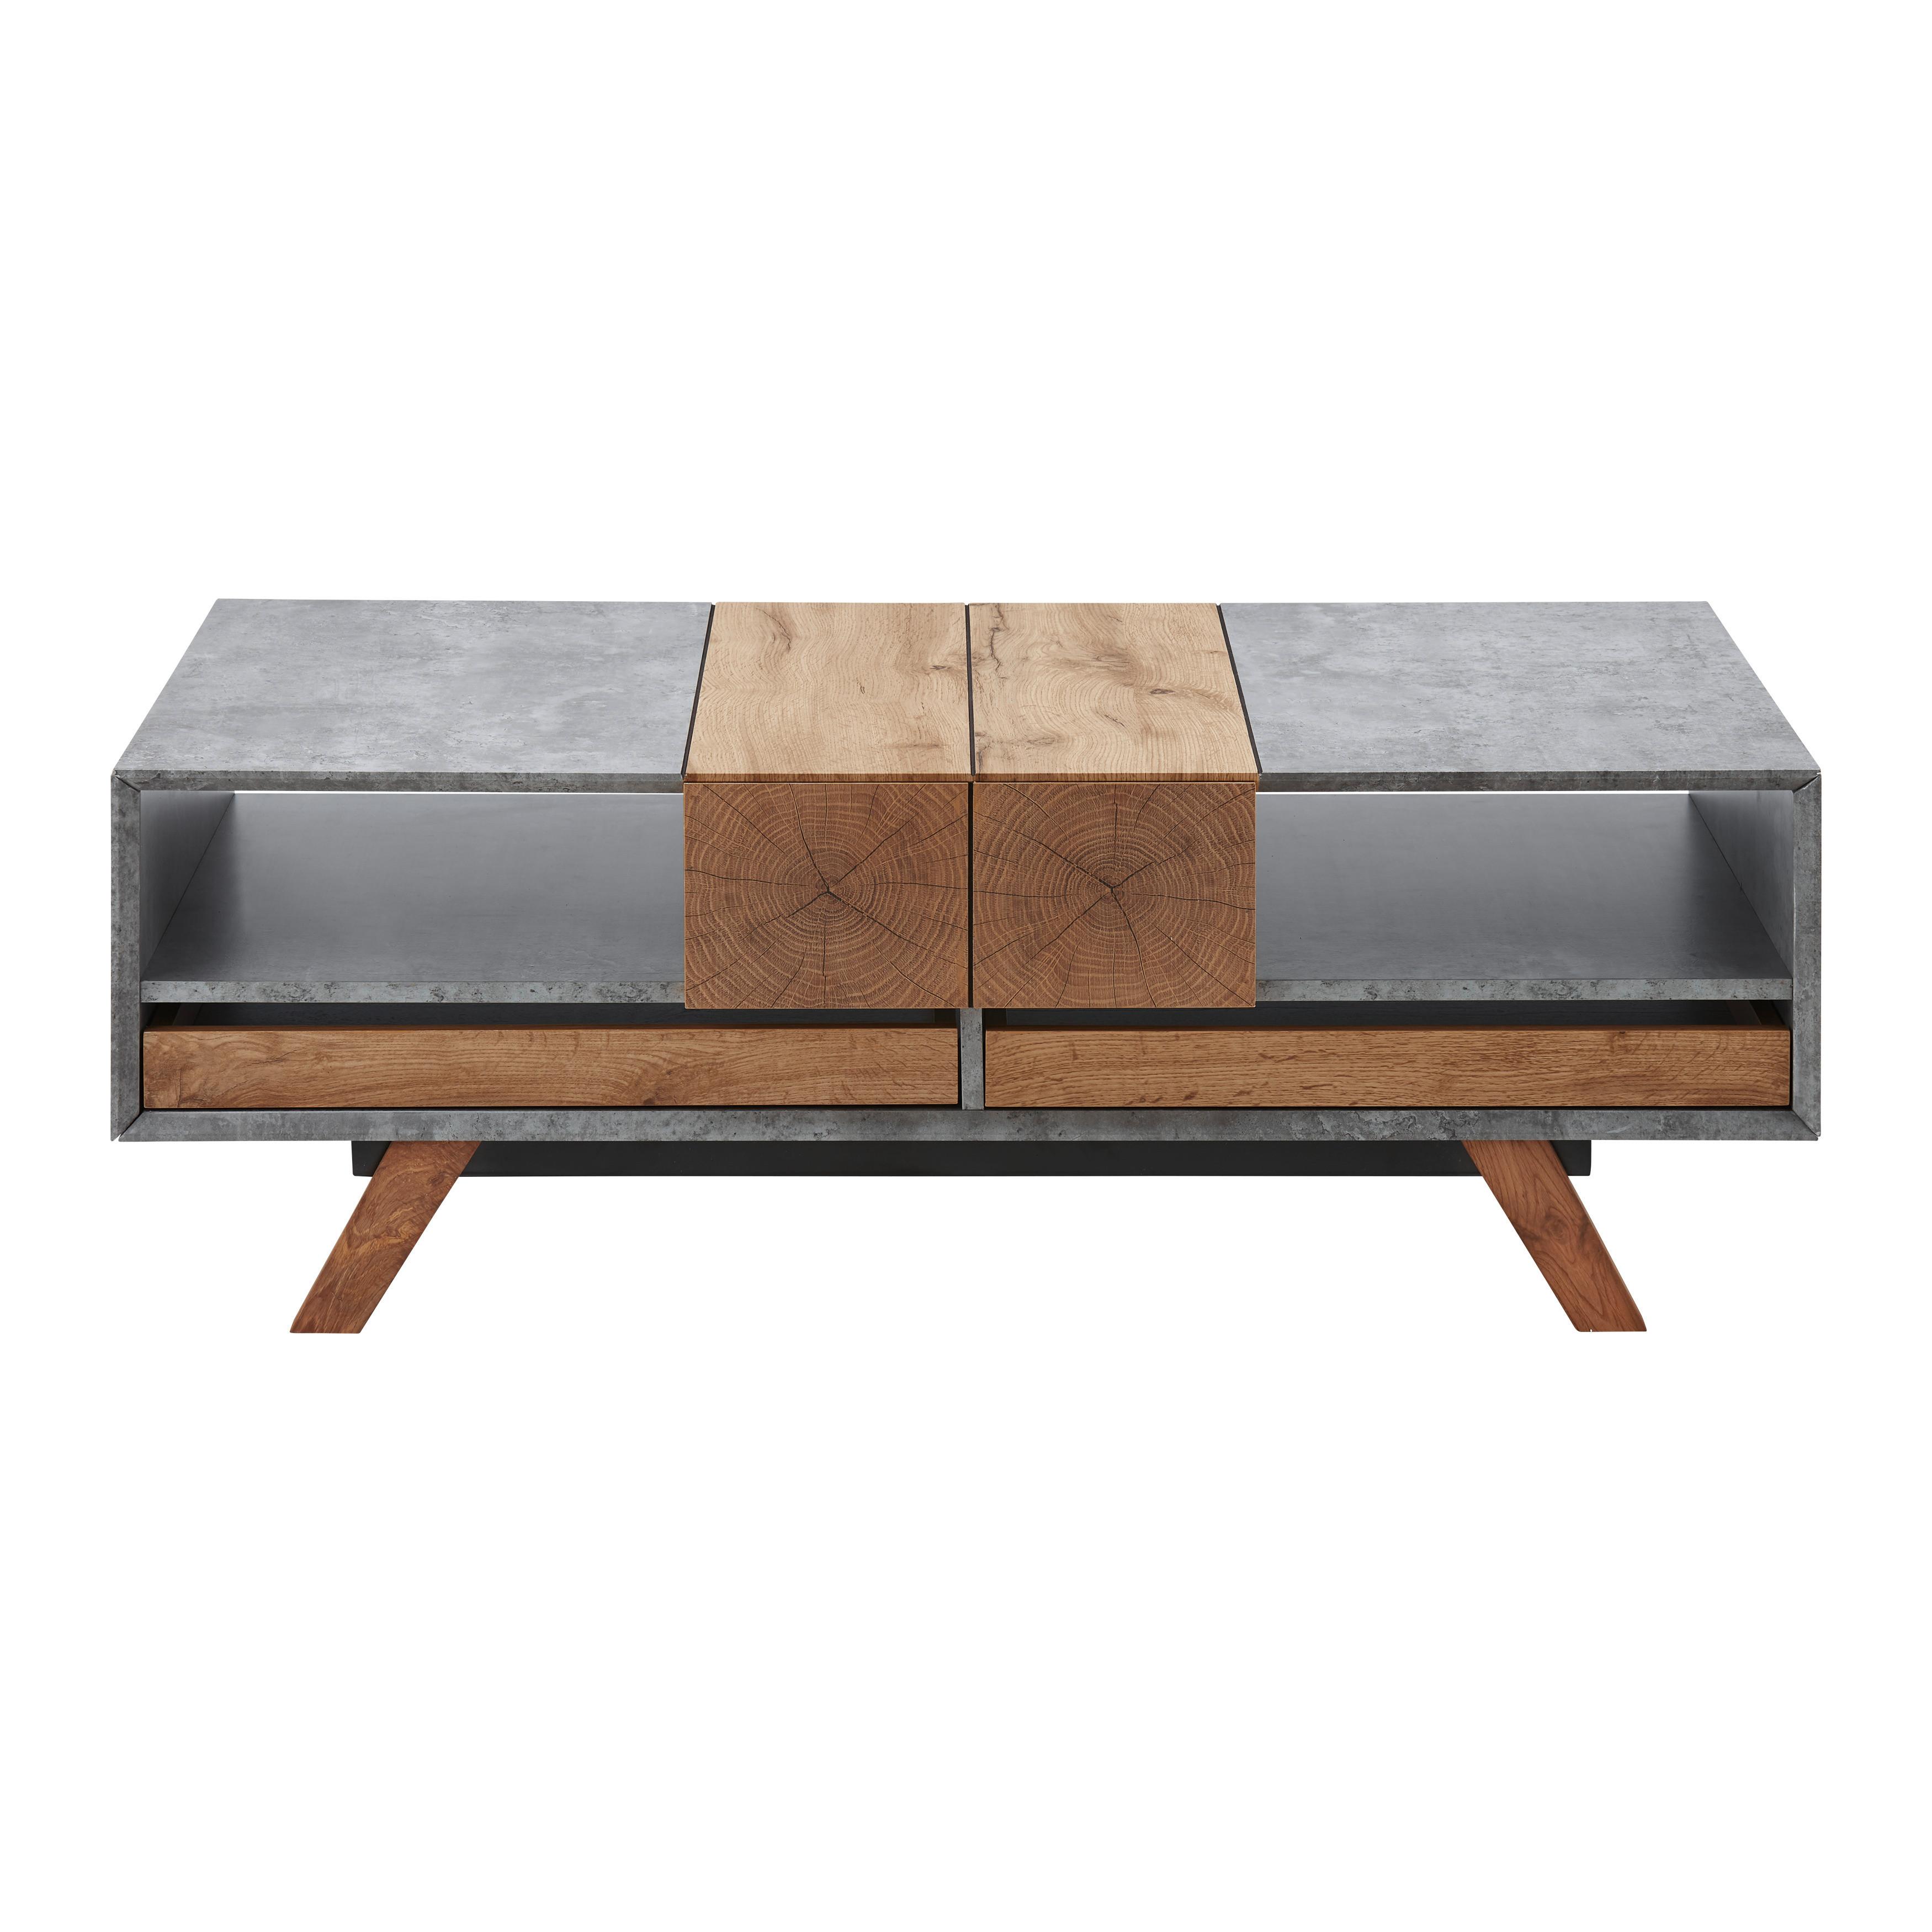 Konferenční Stolek Casper - šedá/barvy dubu, Moderní, dřevo (120/60/42cm) - Modern Living